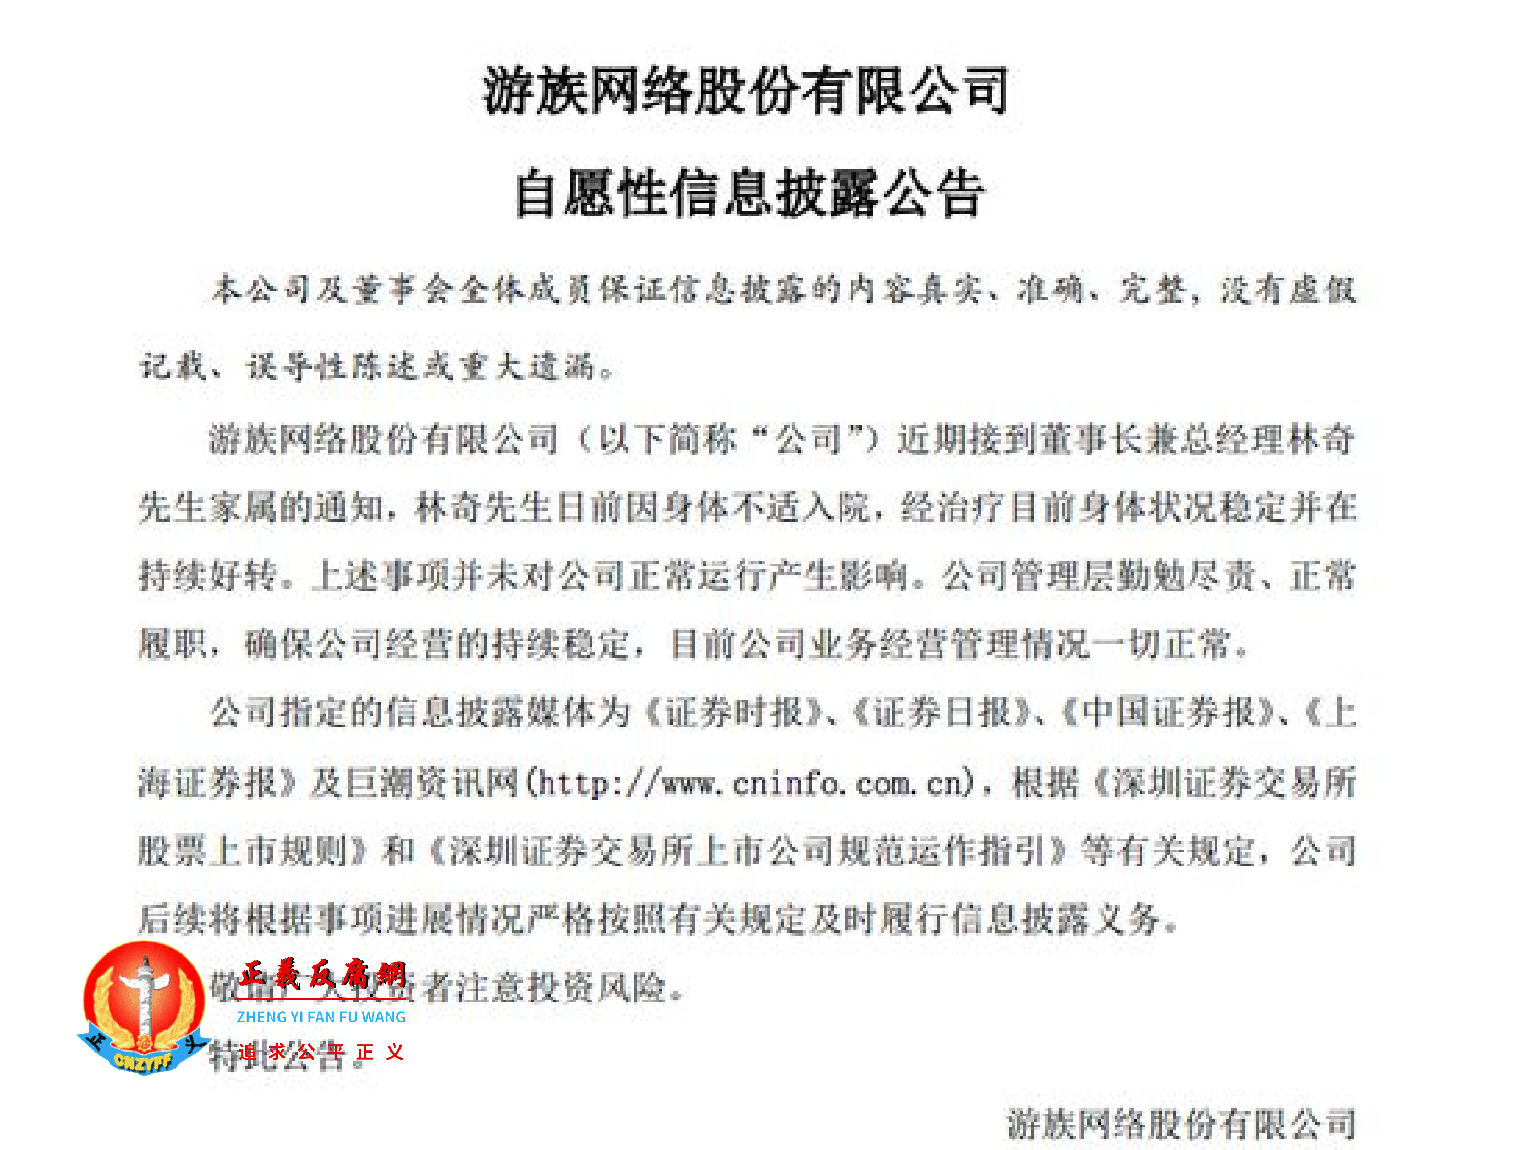 游族网络股份有限公司自愿性信息披露公告.png